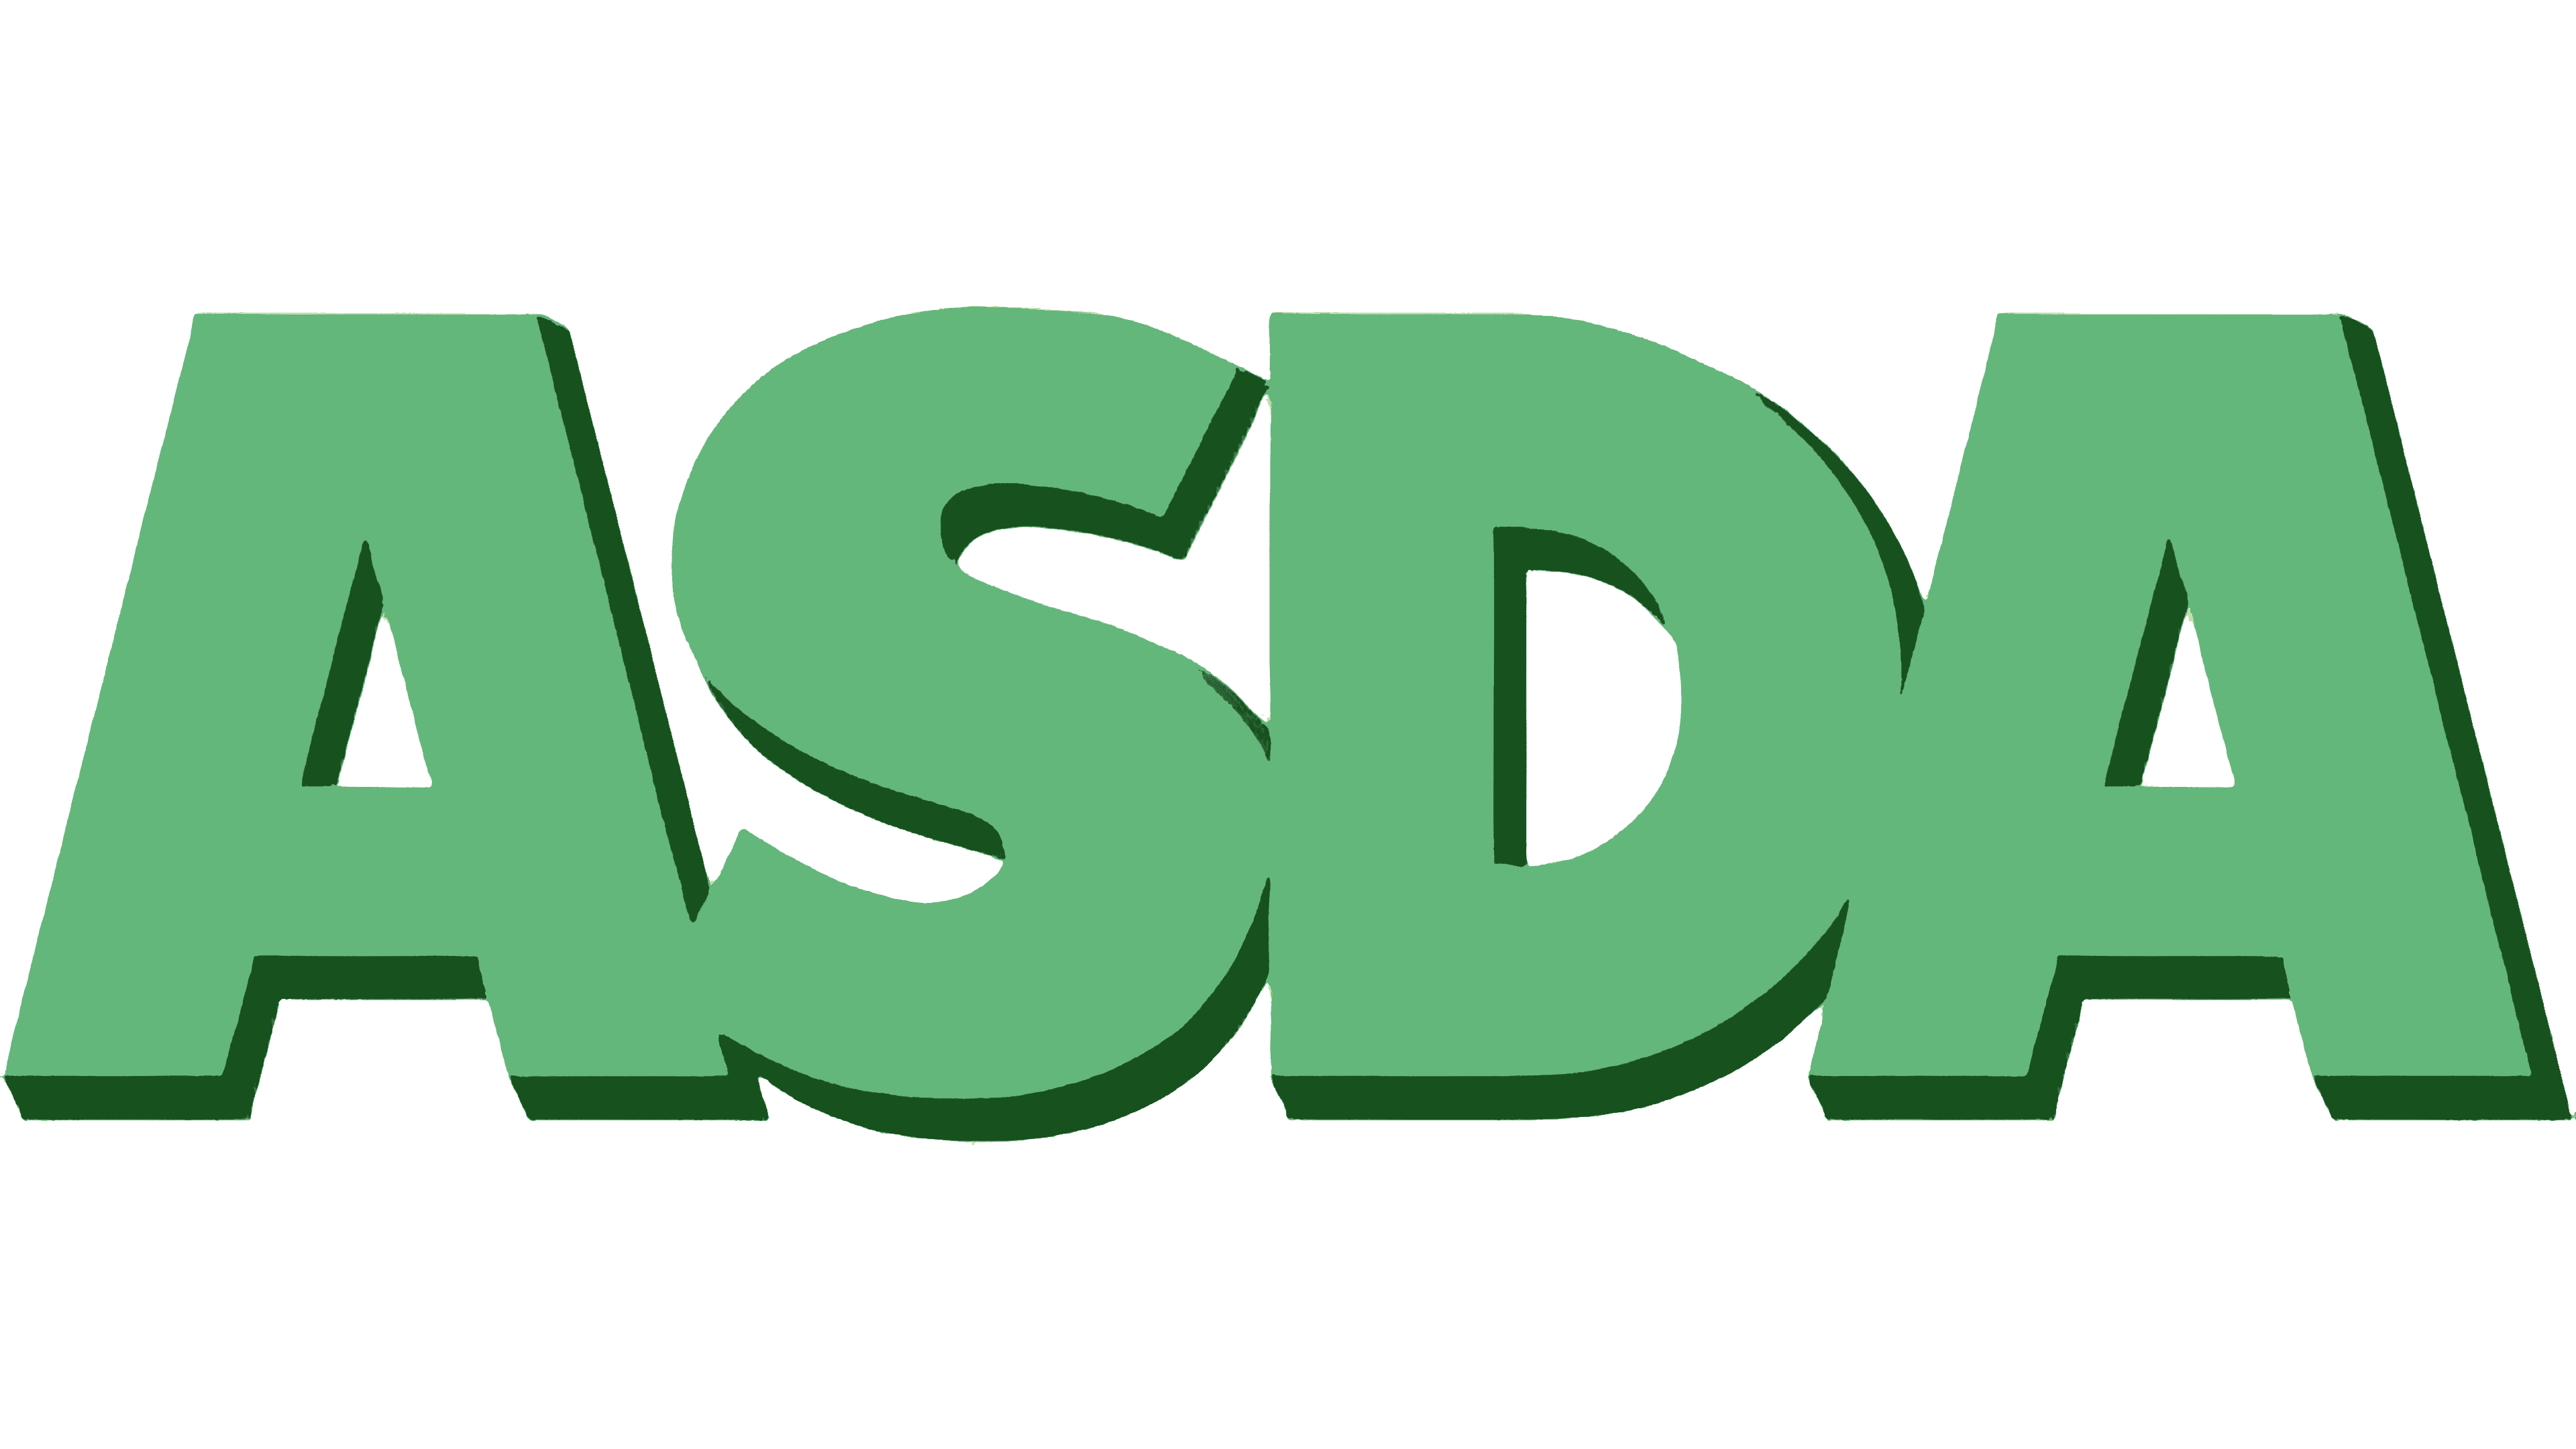 Gren Asda Logo